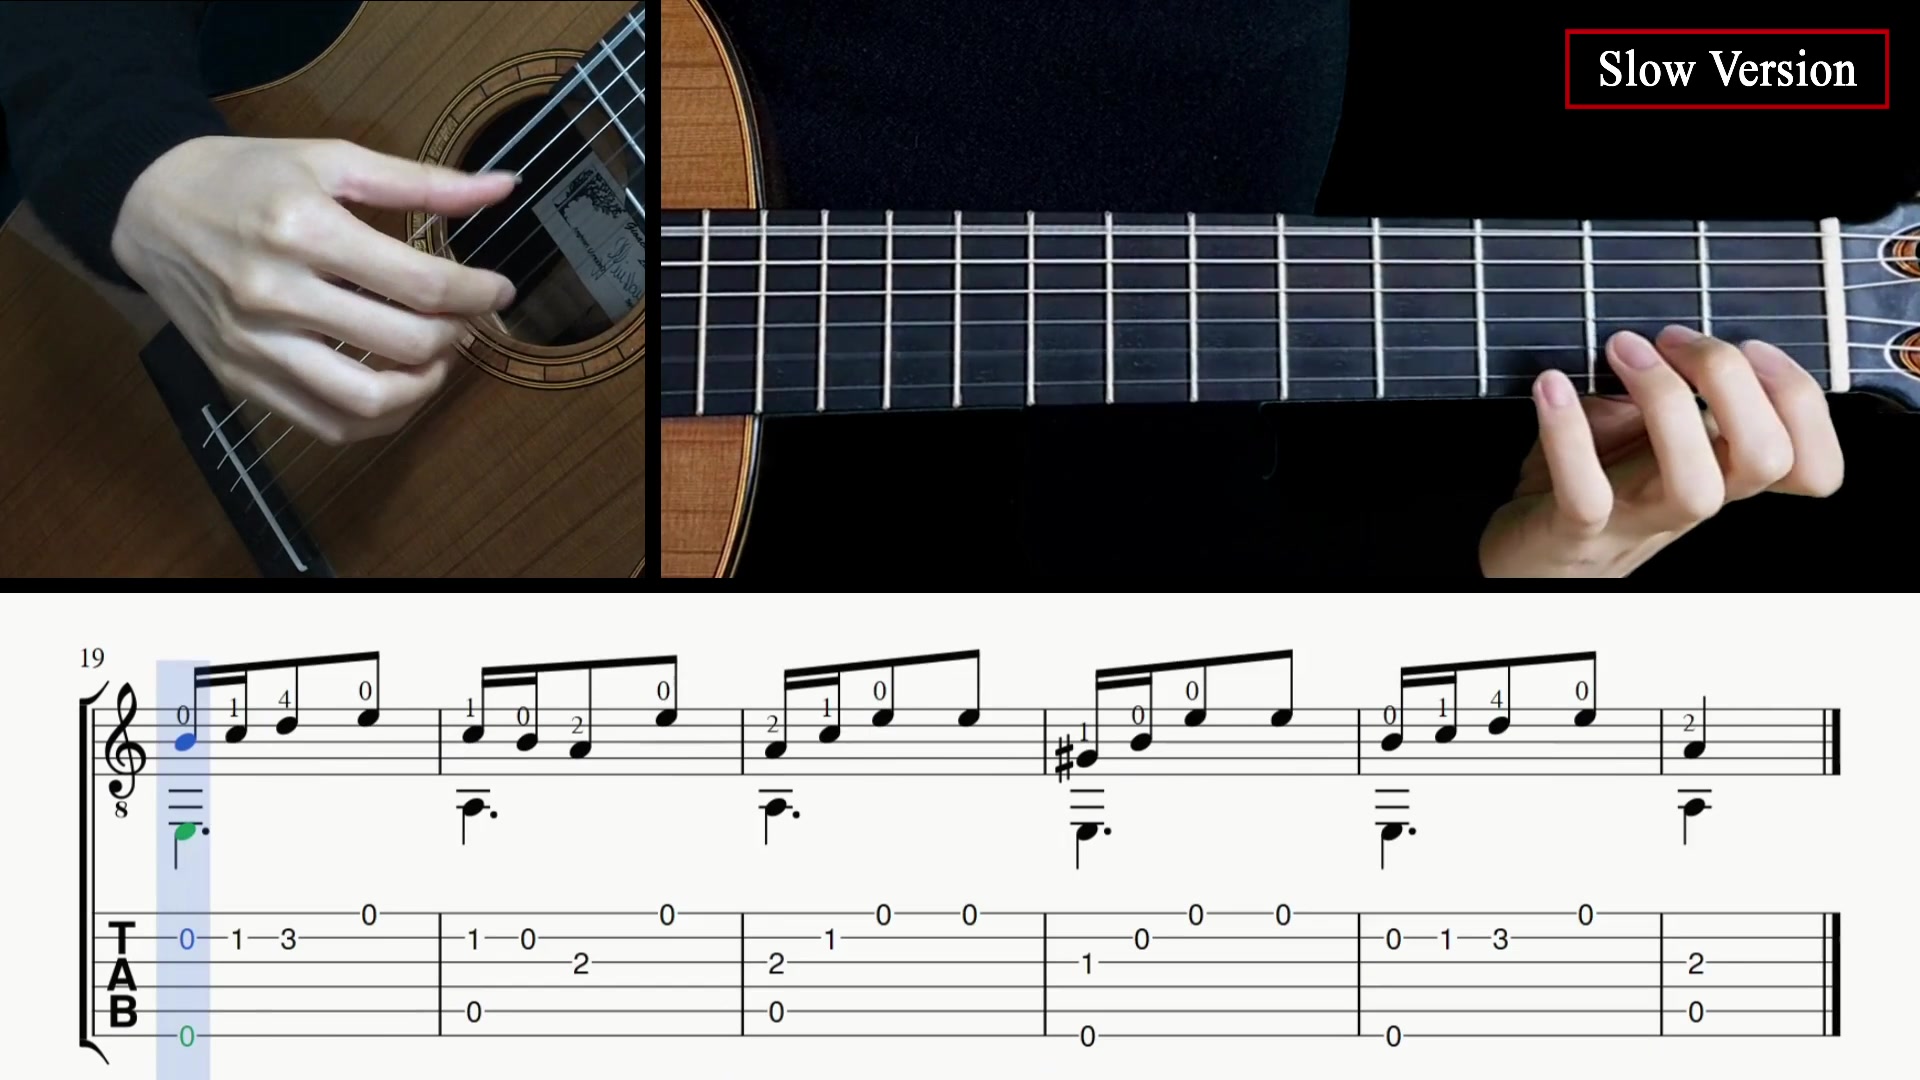 【吉他技巧教学/附使用例】一分钟学会万能的大拇指拍弦技巧